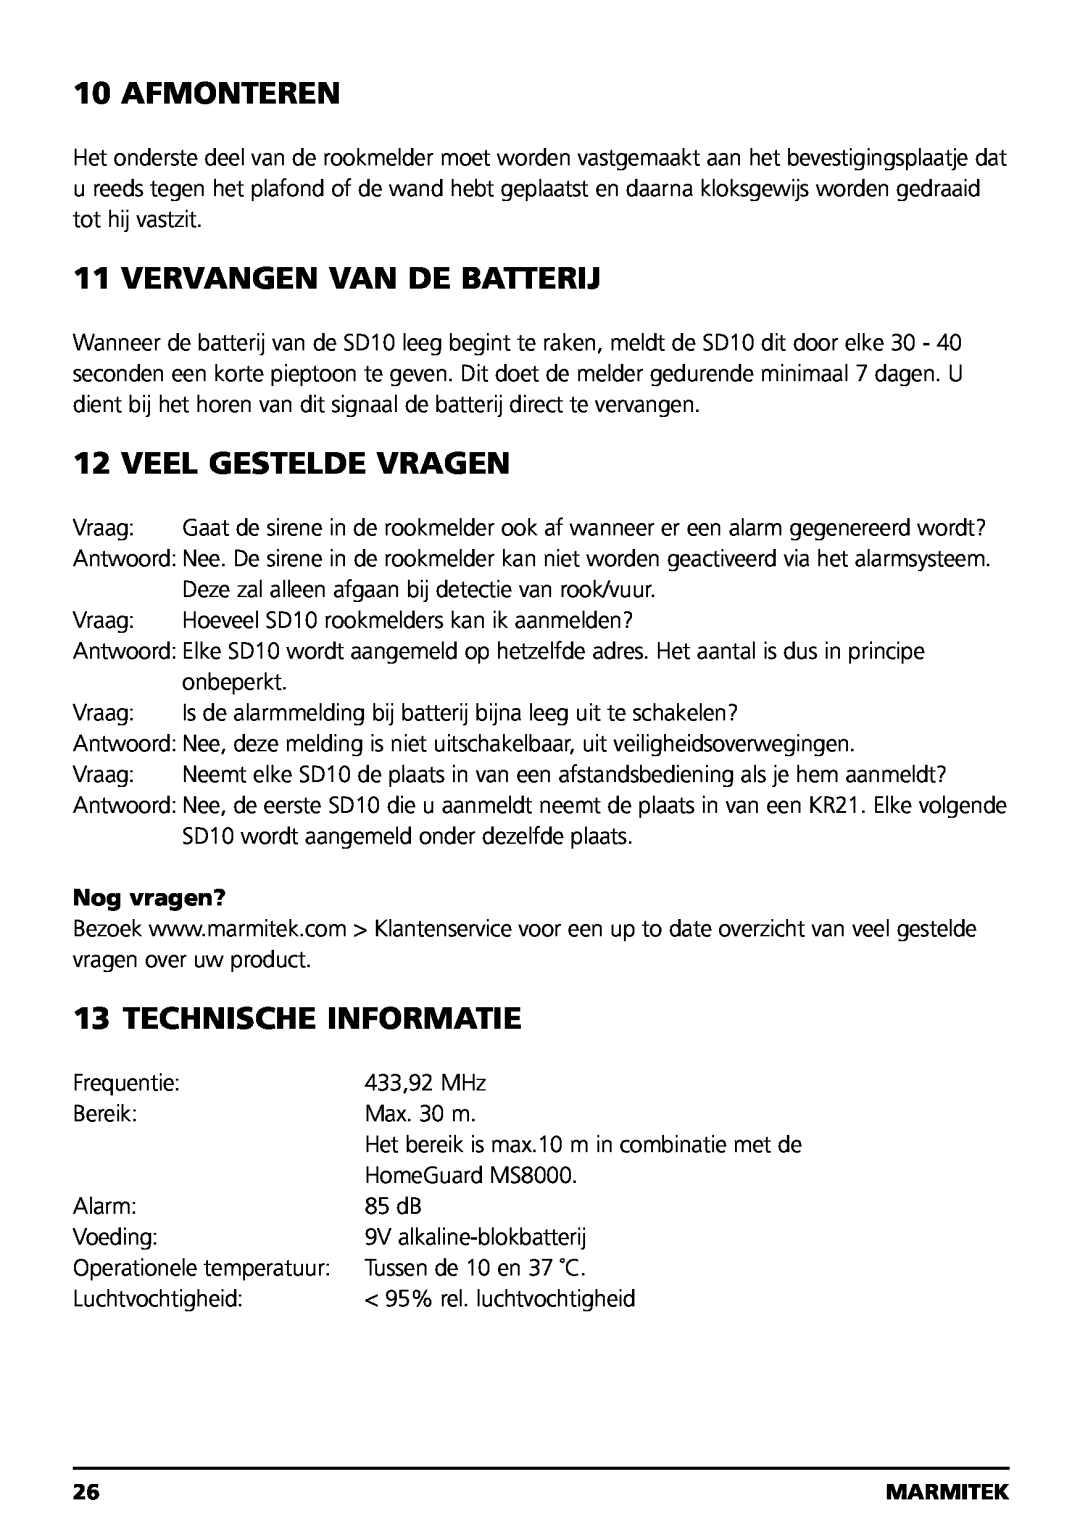 Marmitek SD10 owner manual Afmonteren, Vervangen Van De Batterij, Veel Gestelde Vragen, Technische Informatie, Nog vragen? 